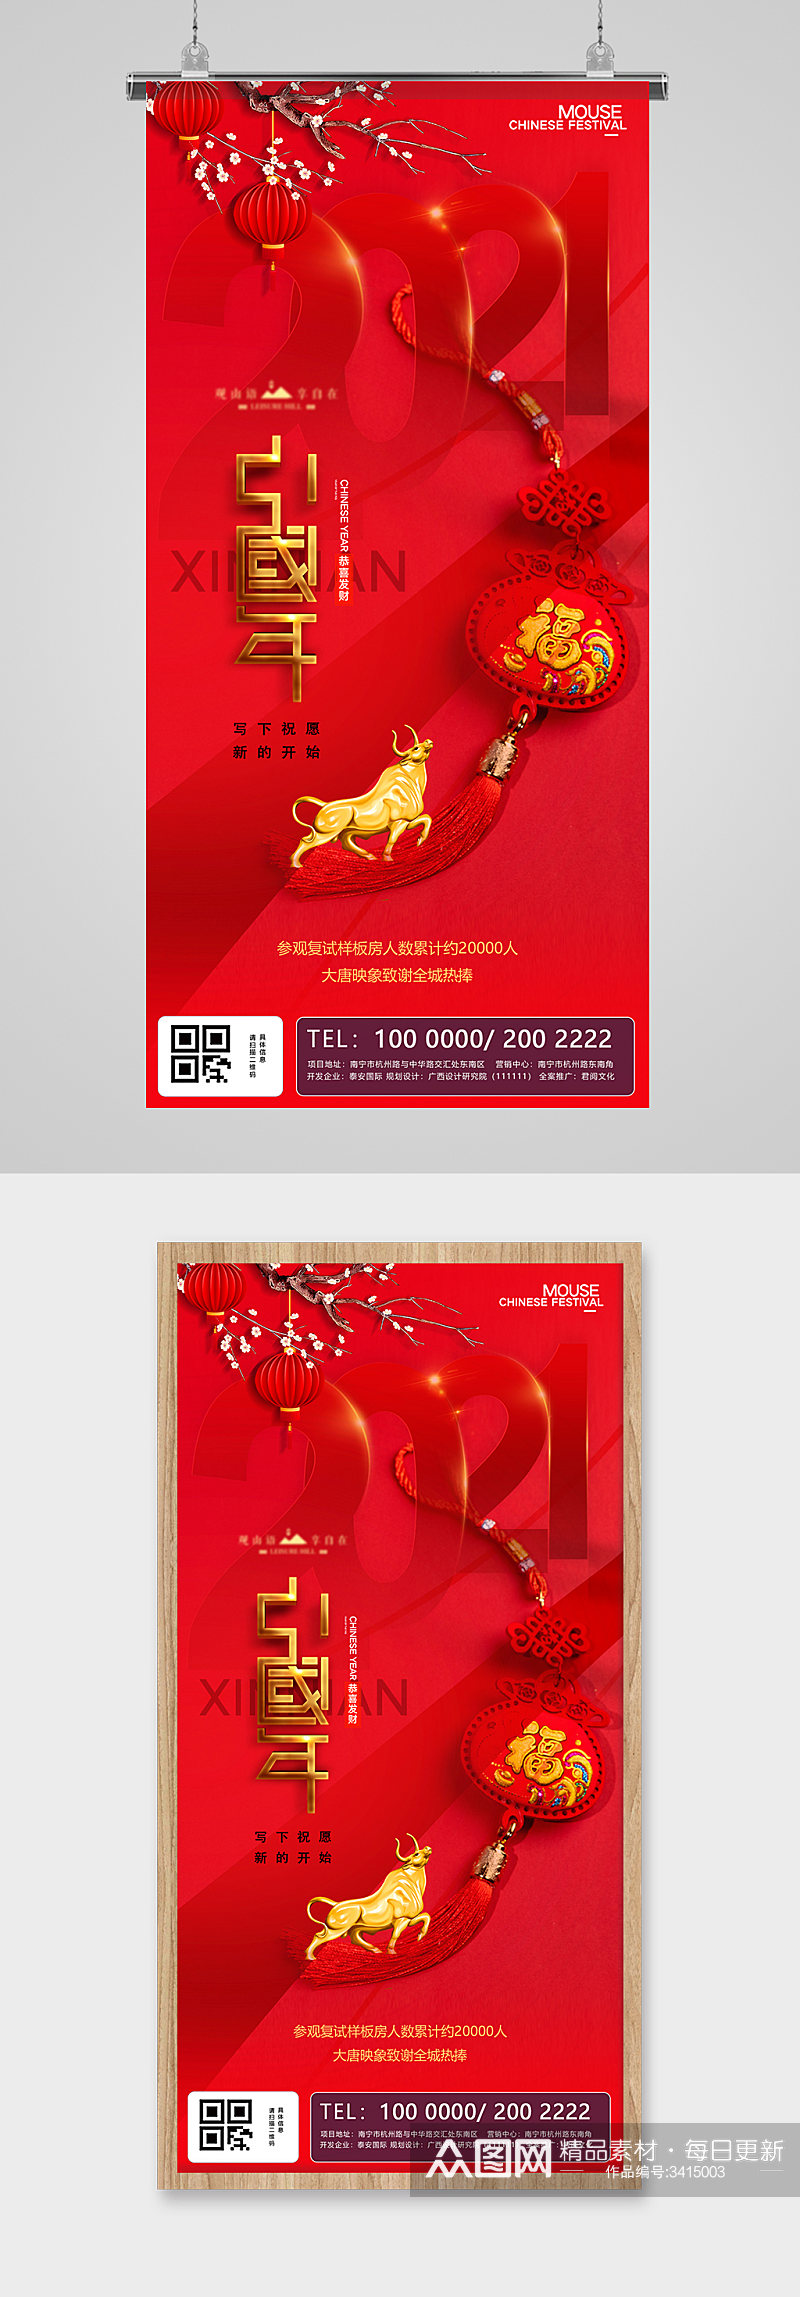 牛年中国年金红地产海报素材